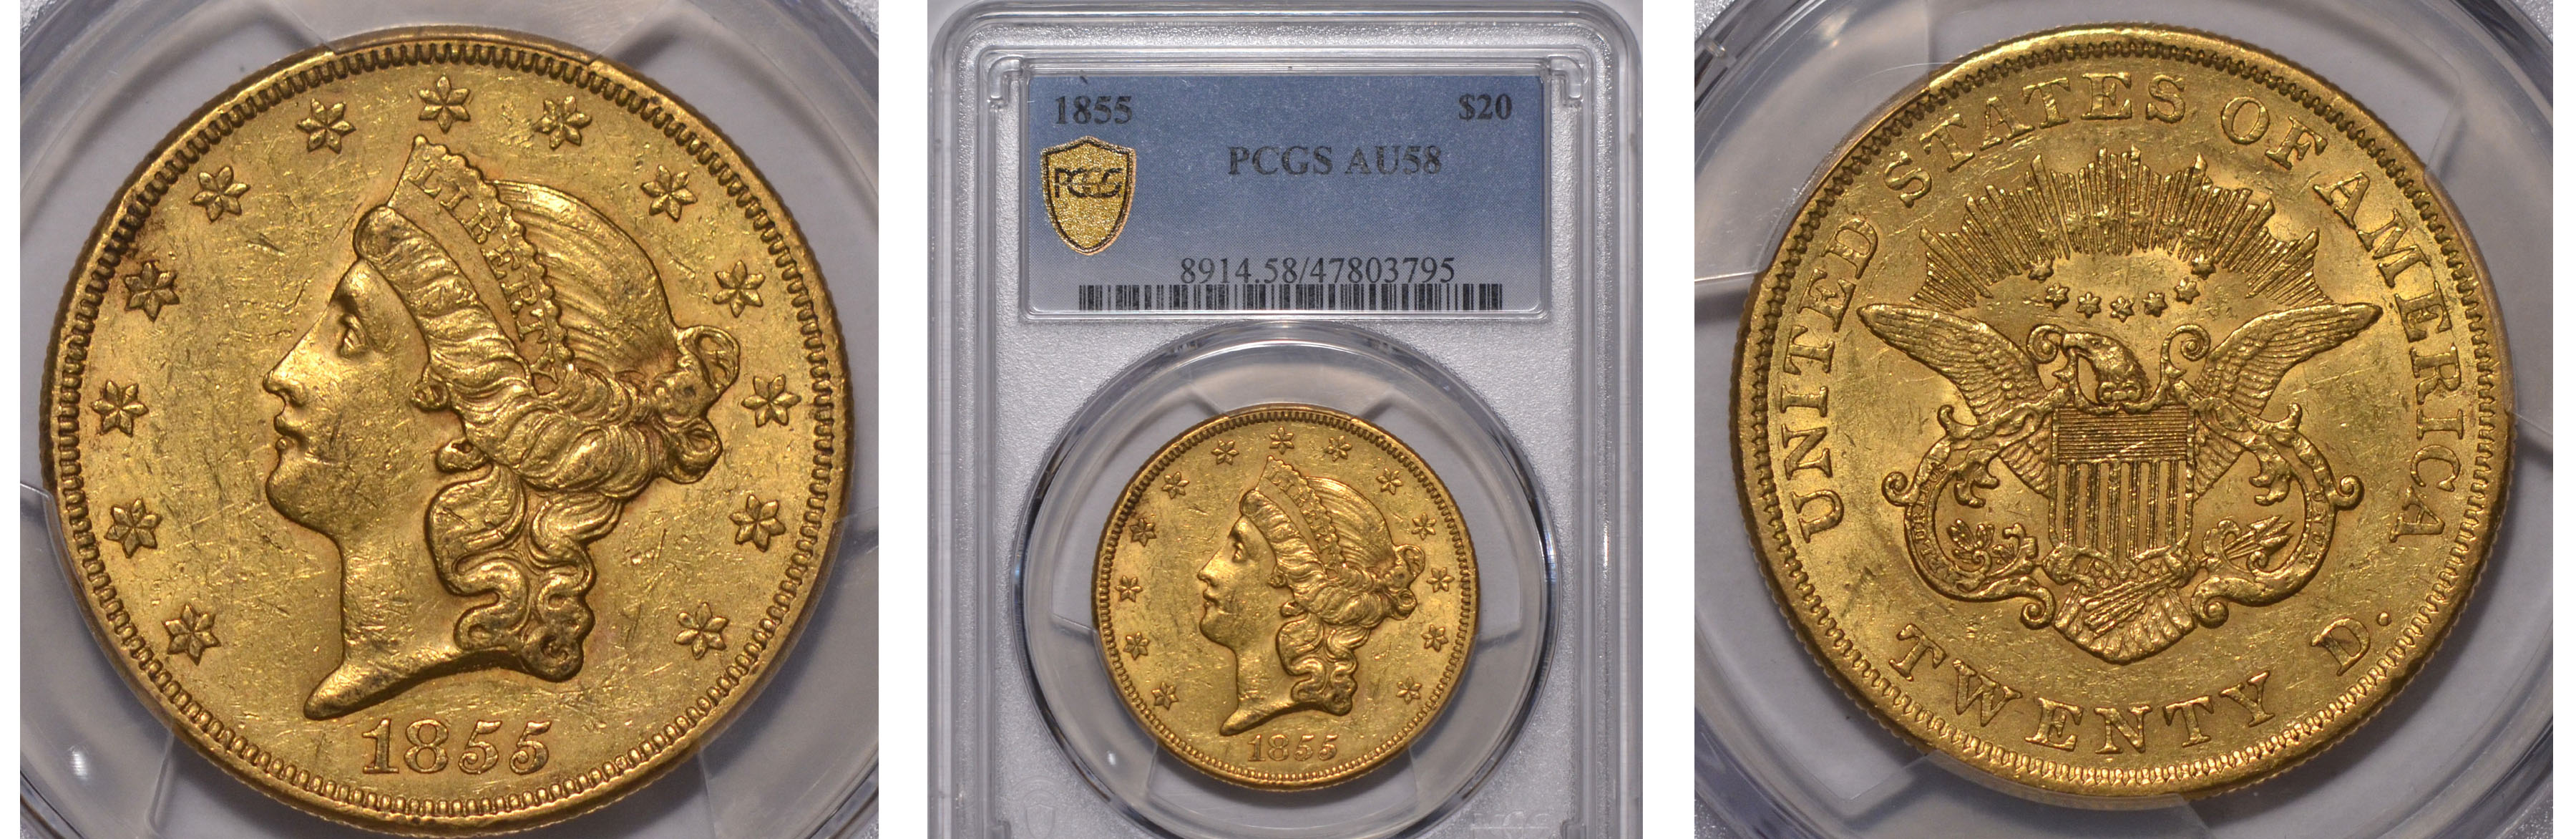 1855 Gold Double Eagle PCGS AU58